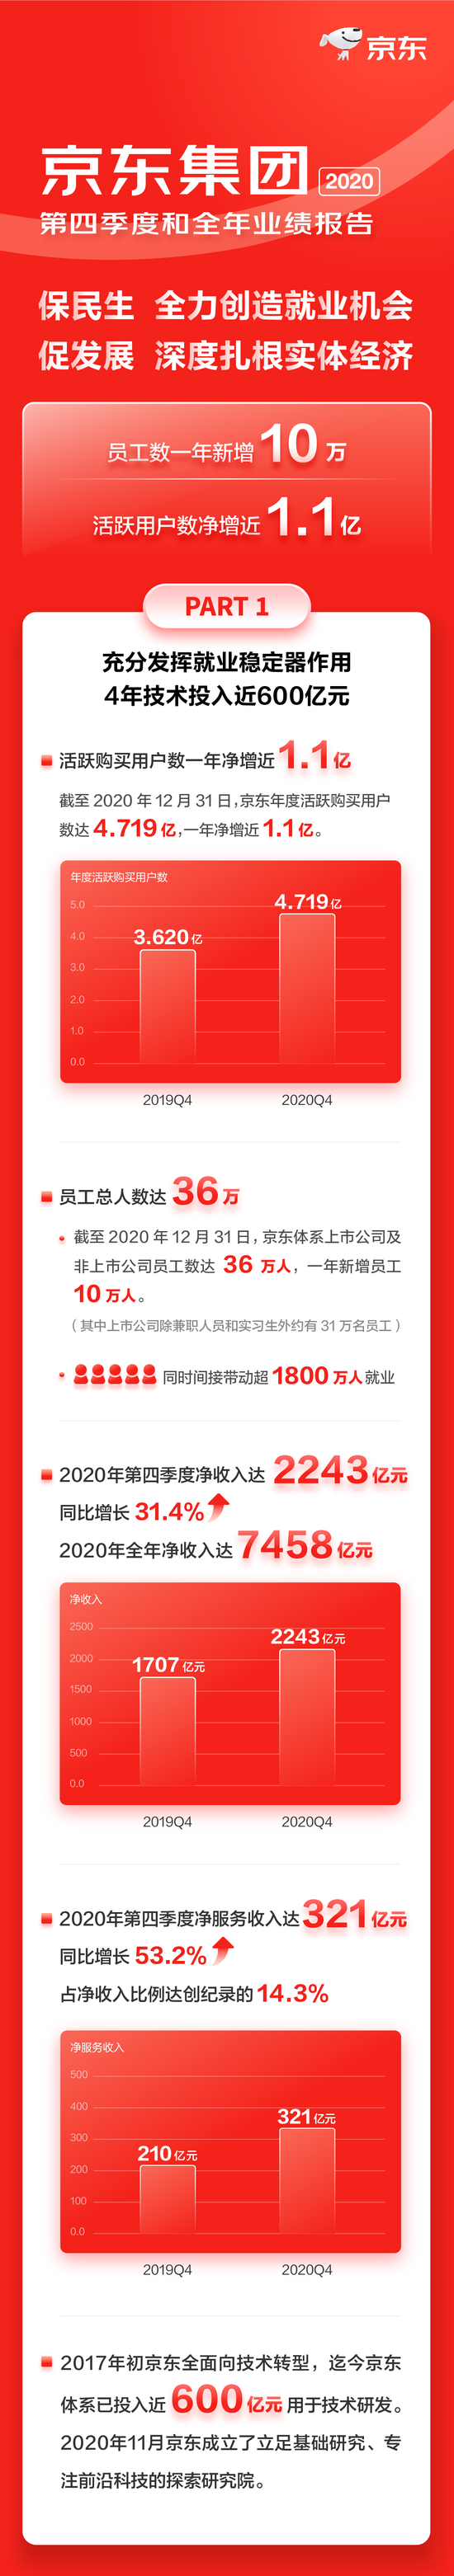 一图看懂京东2020年业绩：新增10万员工 全年收入7458亿元